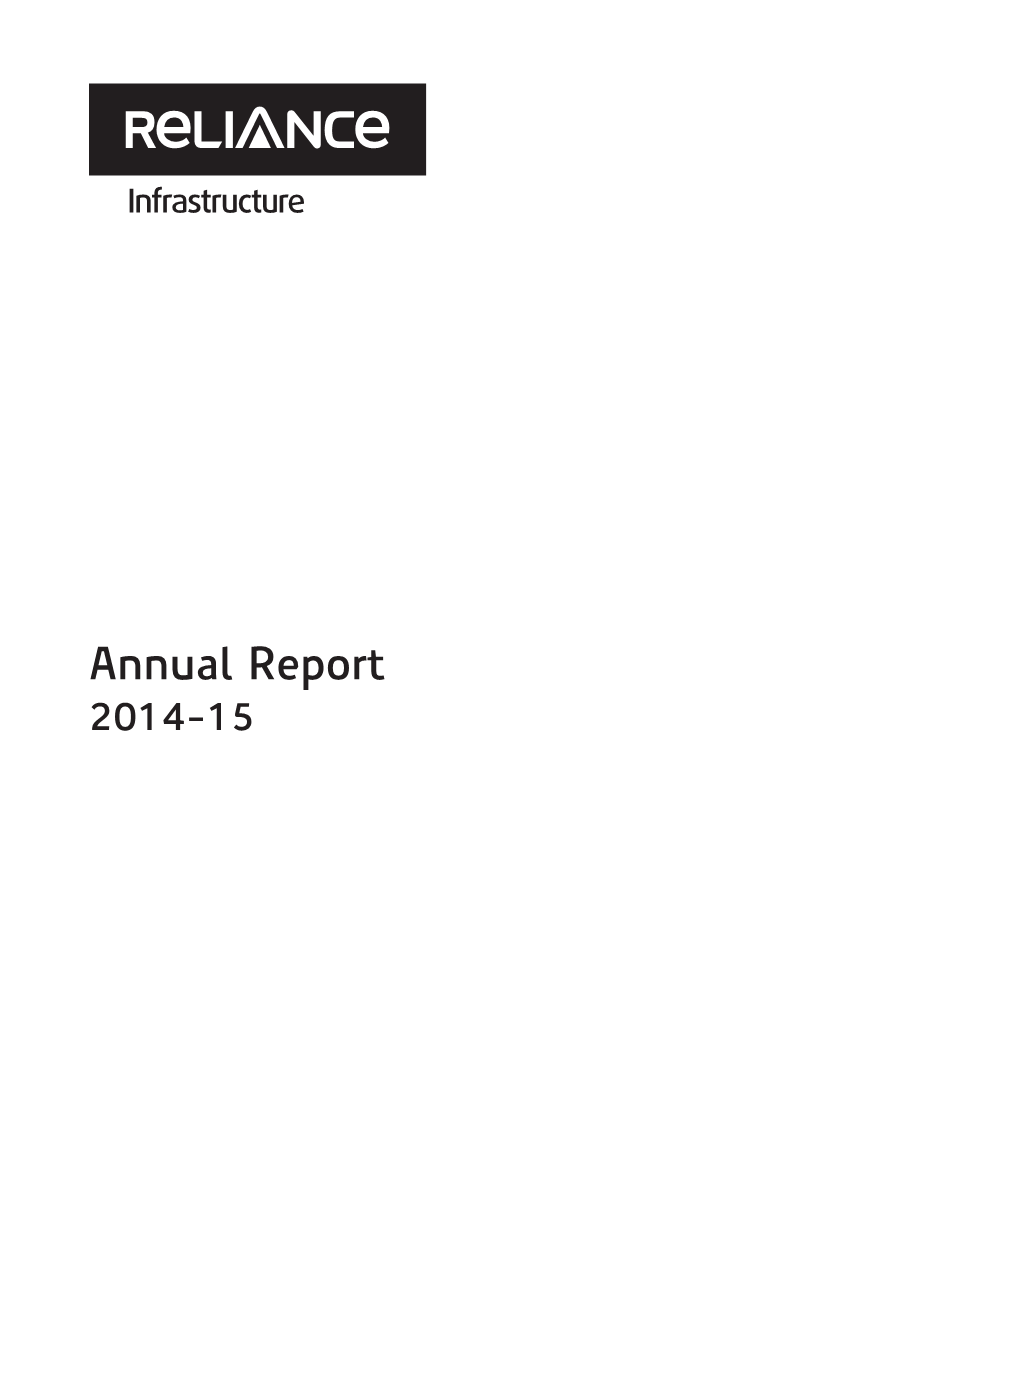 Annual Report 2014-15 Dhirubhai H